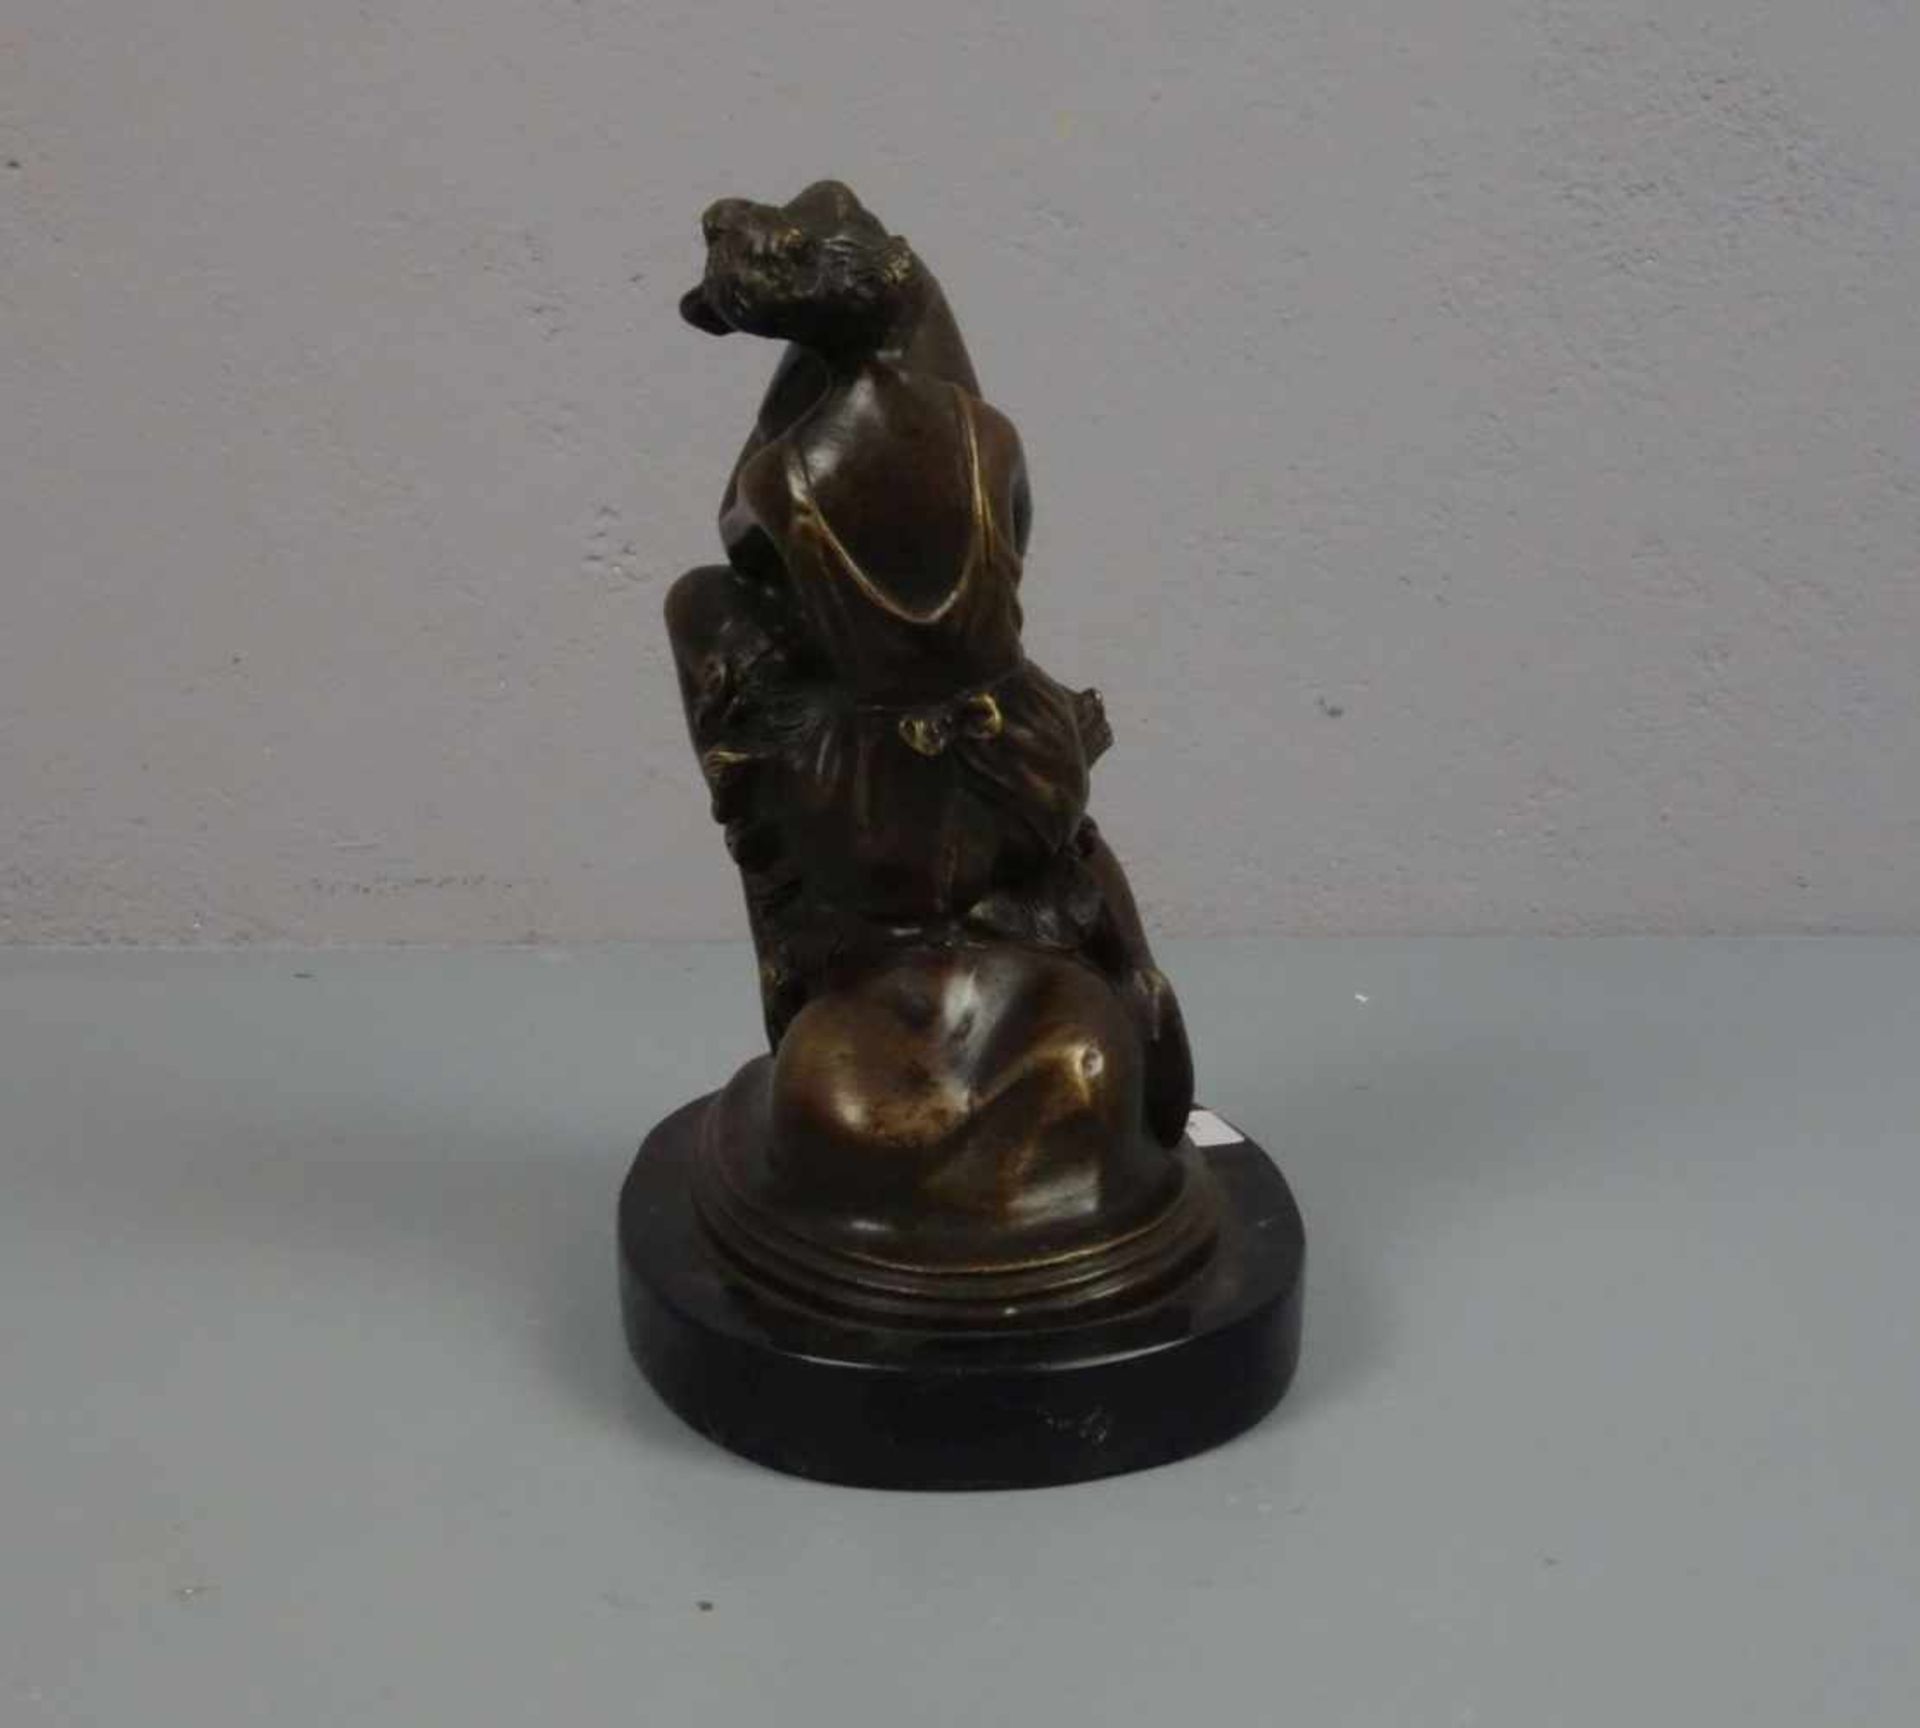 ZACH, BRUNO (1891-1945), erotische Skulptur / erotic sculpture: "Junge Frau, einen Phallus - Image 4 of 5